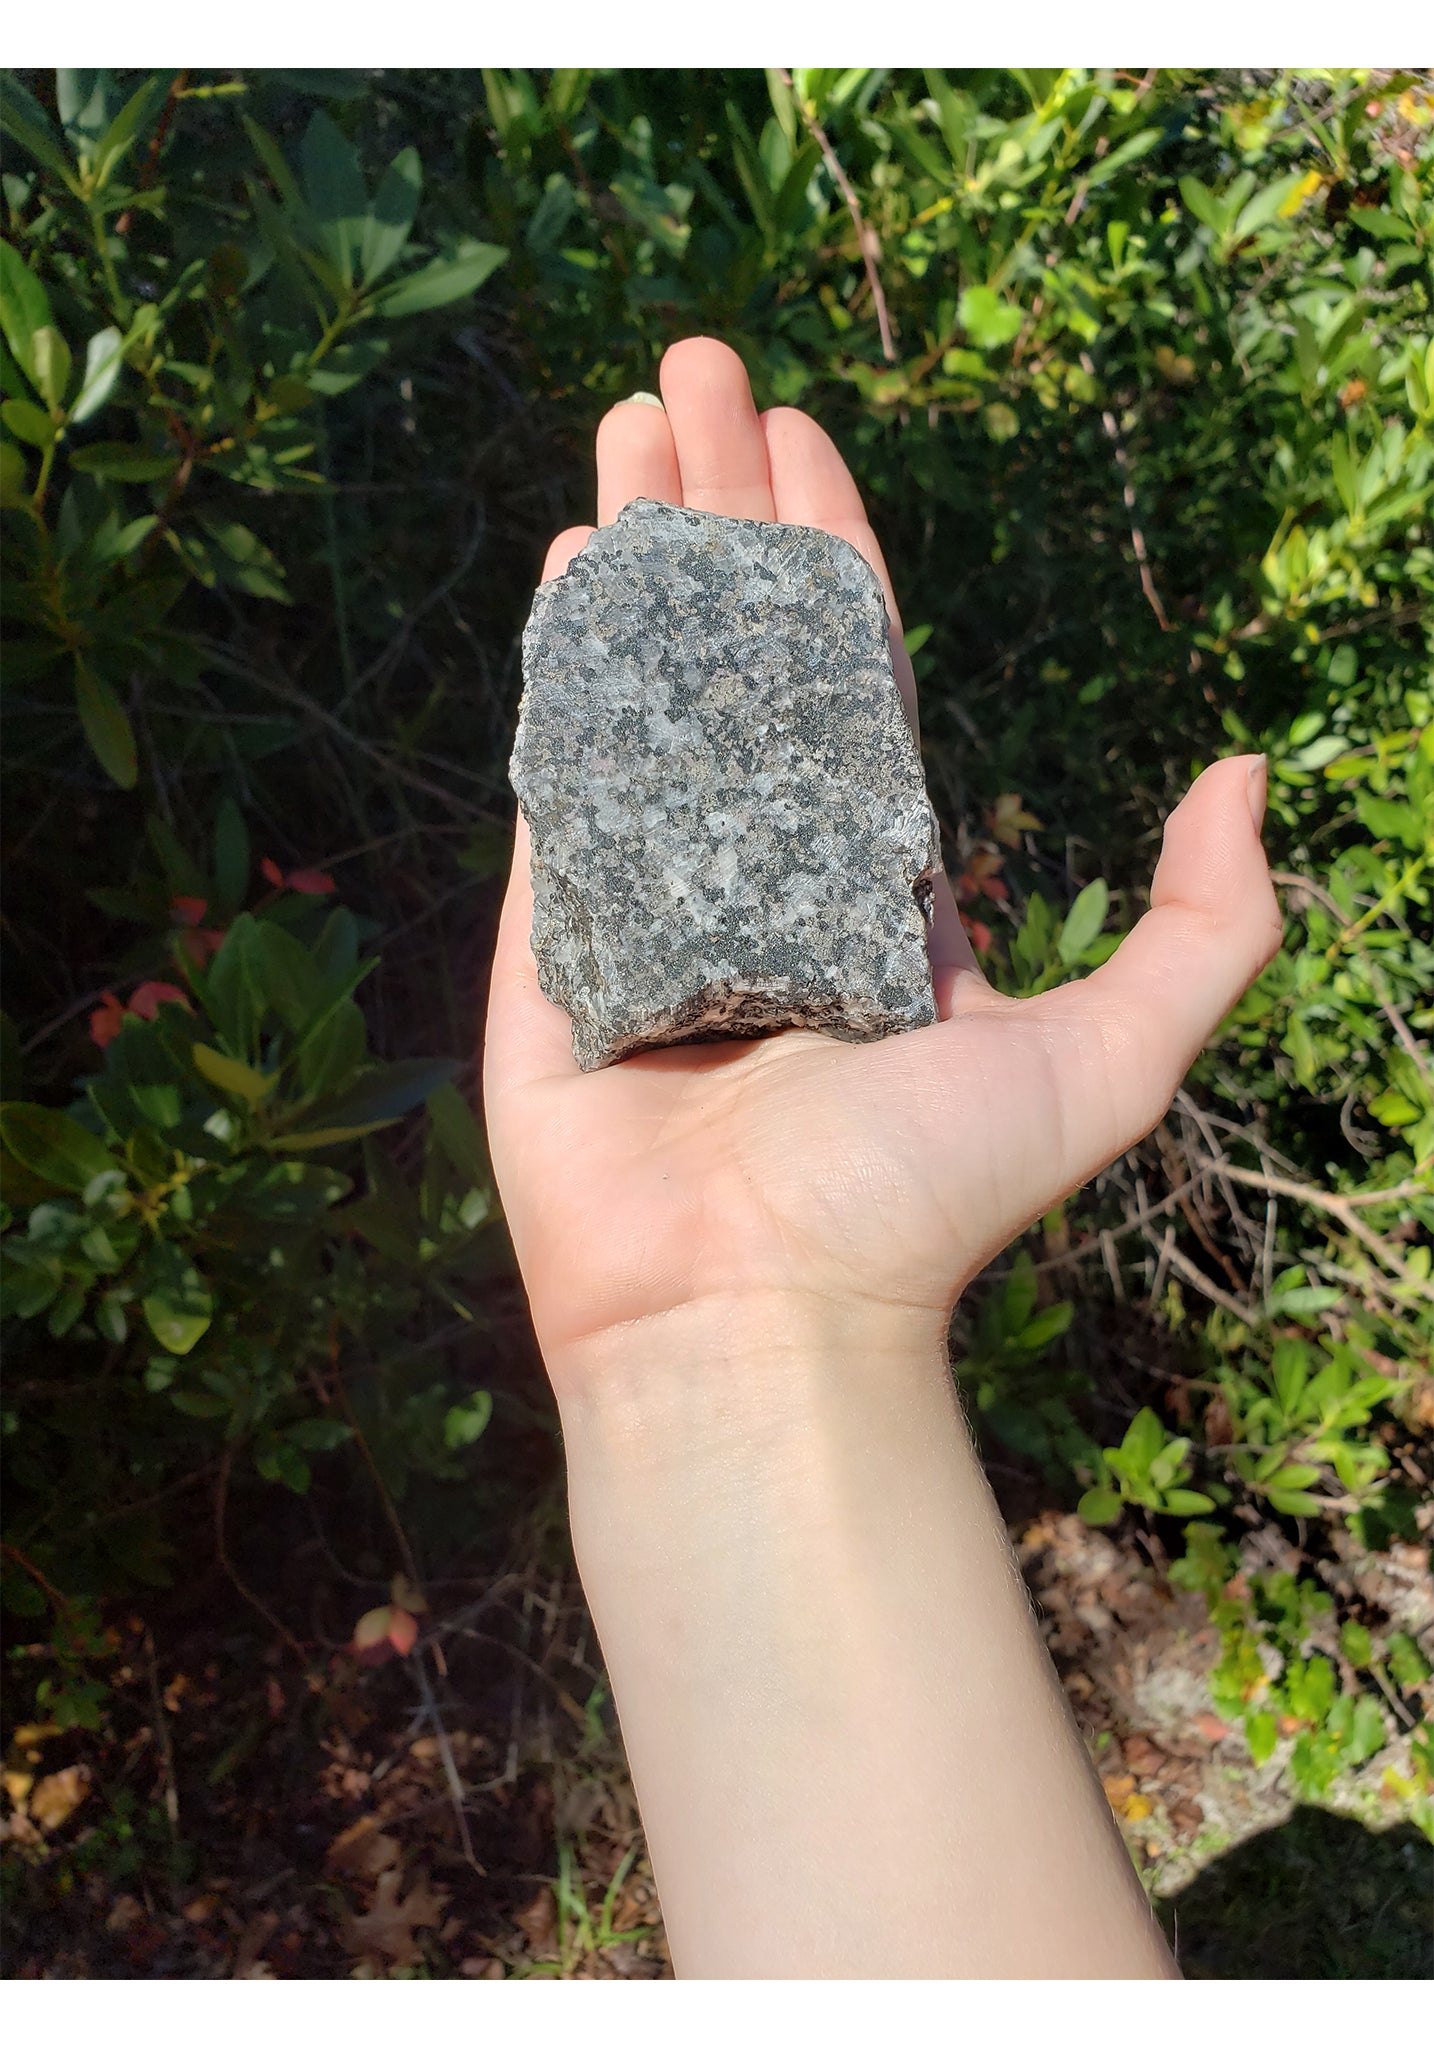 Franklin Willemite in Calcite Matrix Natural Gemstone Slab 3